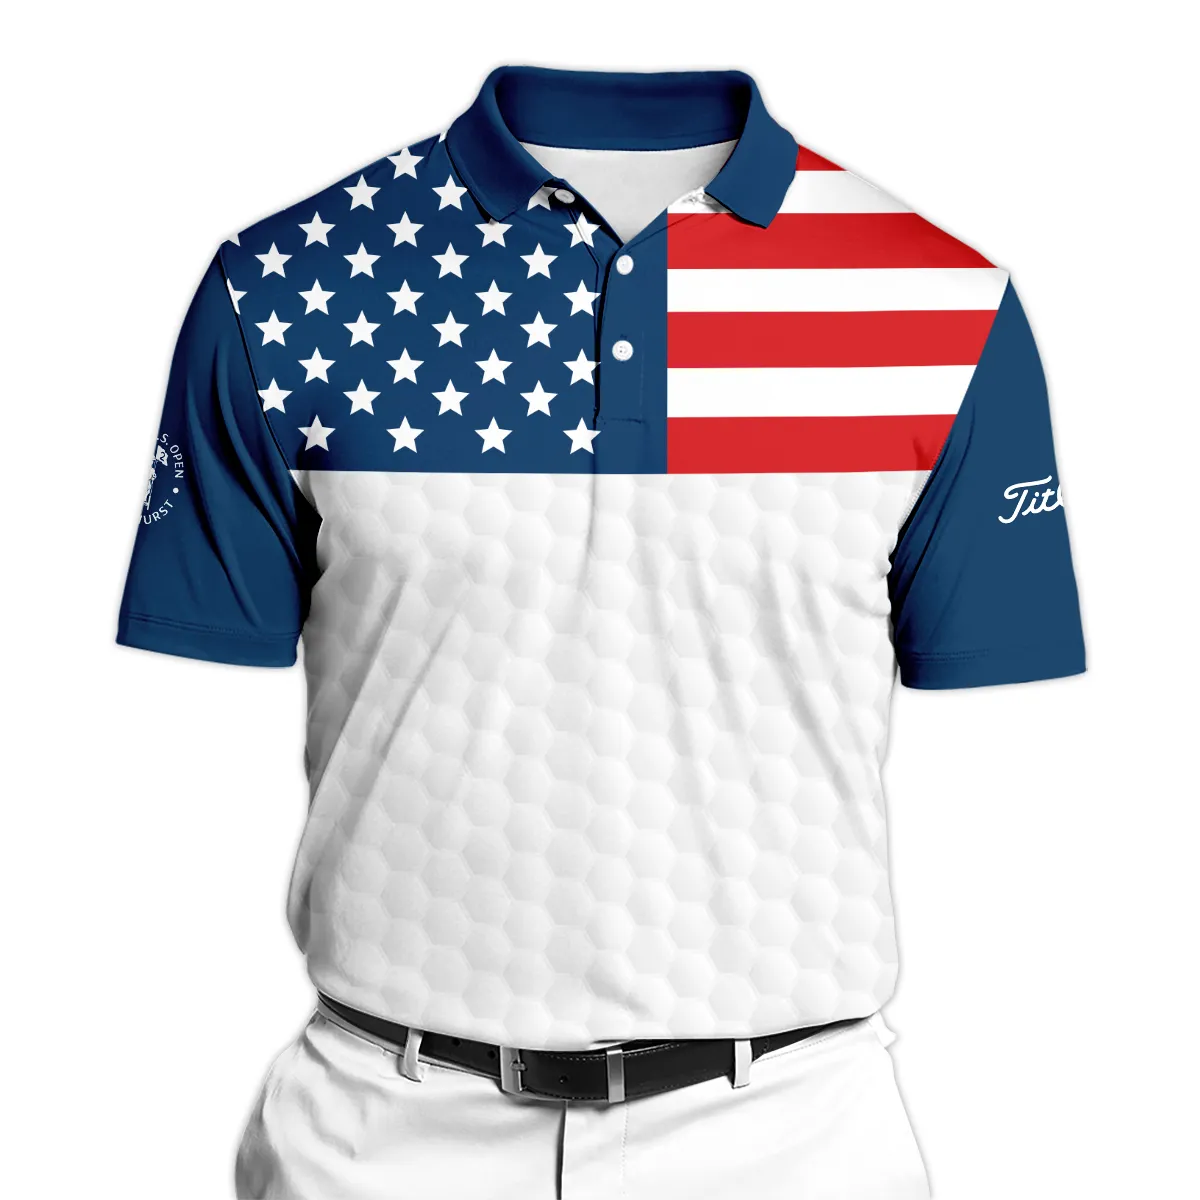 The Golfing Legend Golf 124th U.S. Open Pinehurst Titleist Zipper Hoodie Shirt Style Classic